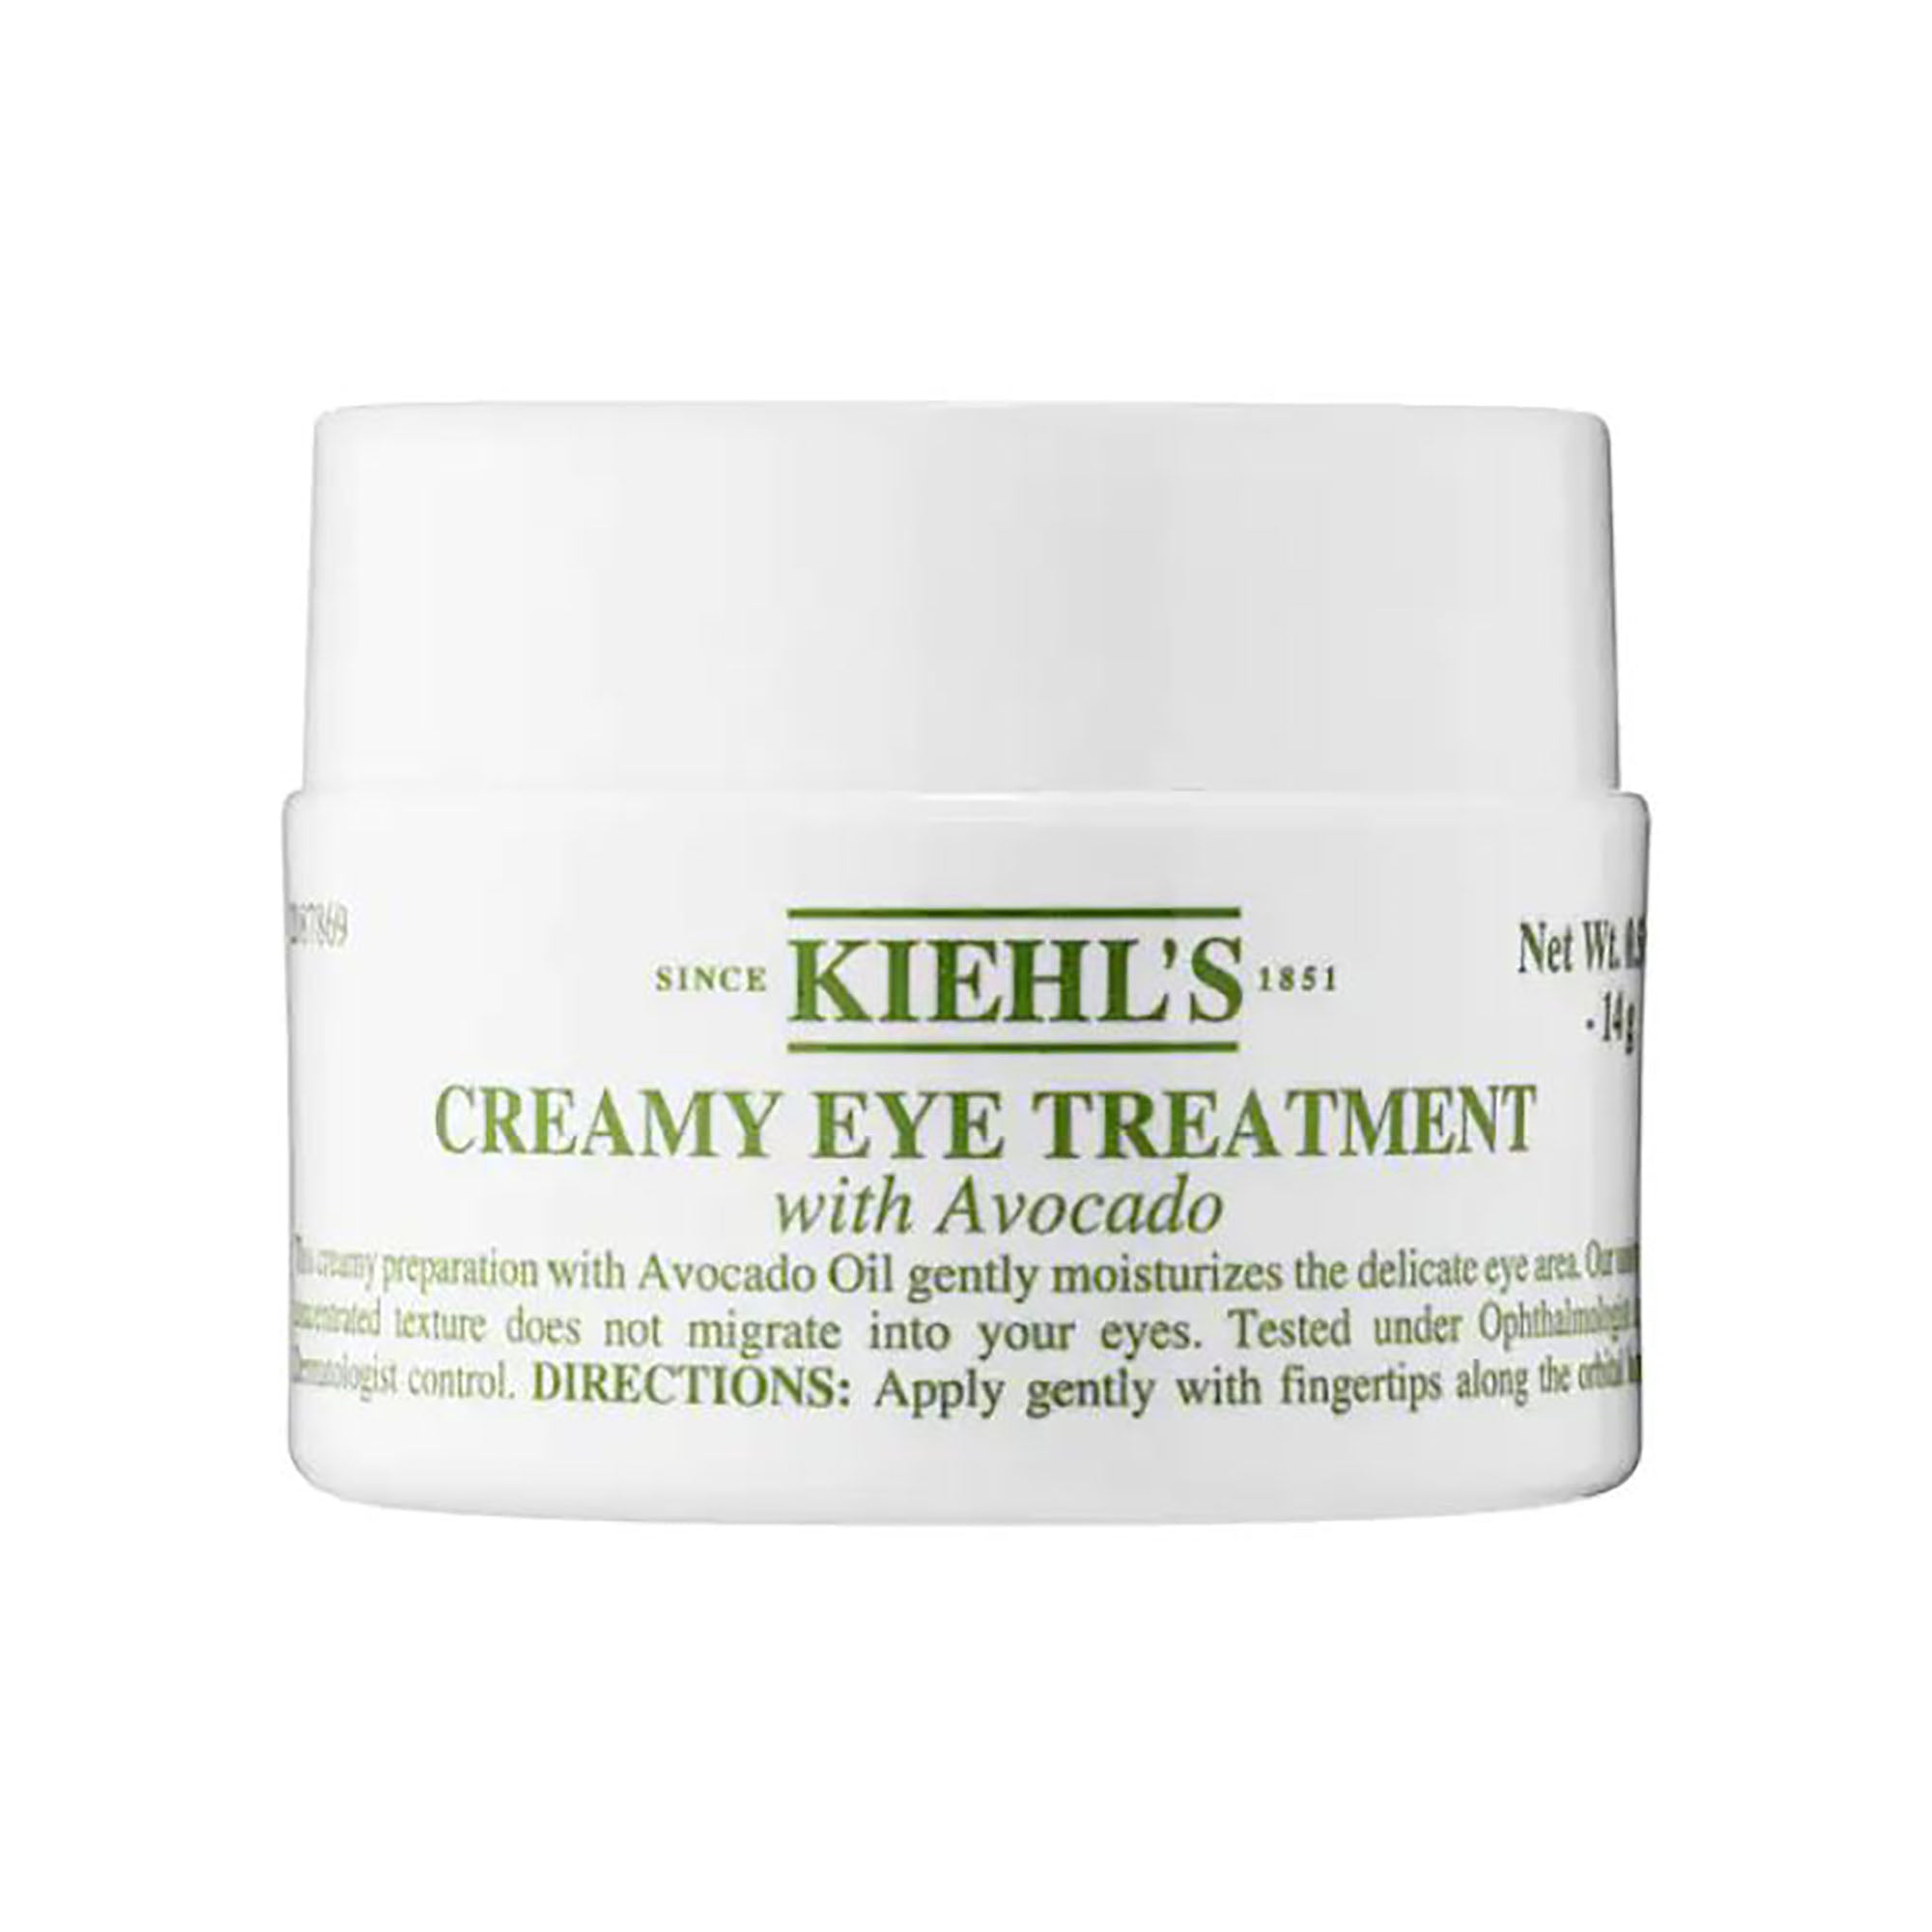 Kiehl's Creamy Eye Treatment with Avocado - 0.5oz / 0.5OZ